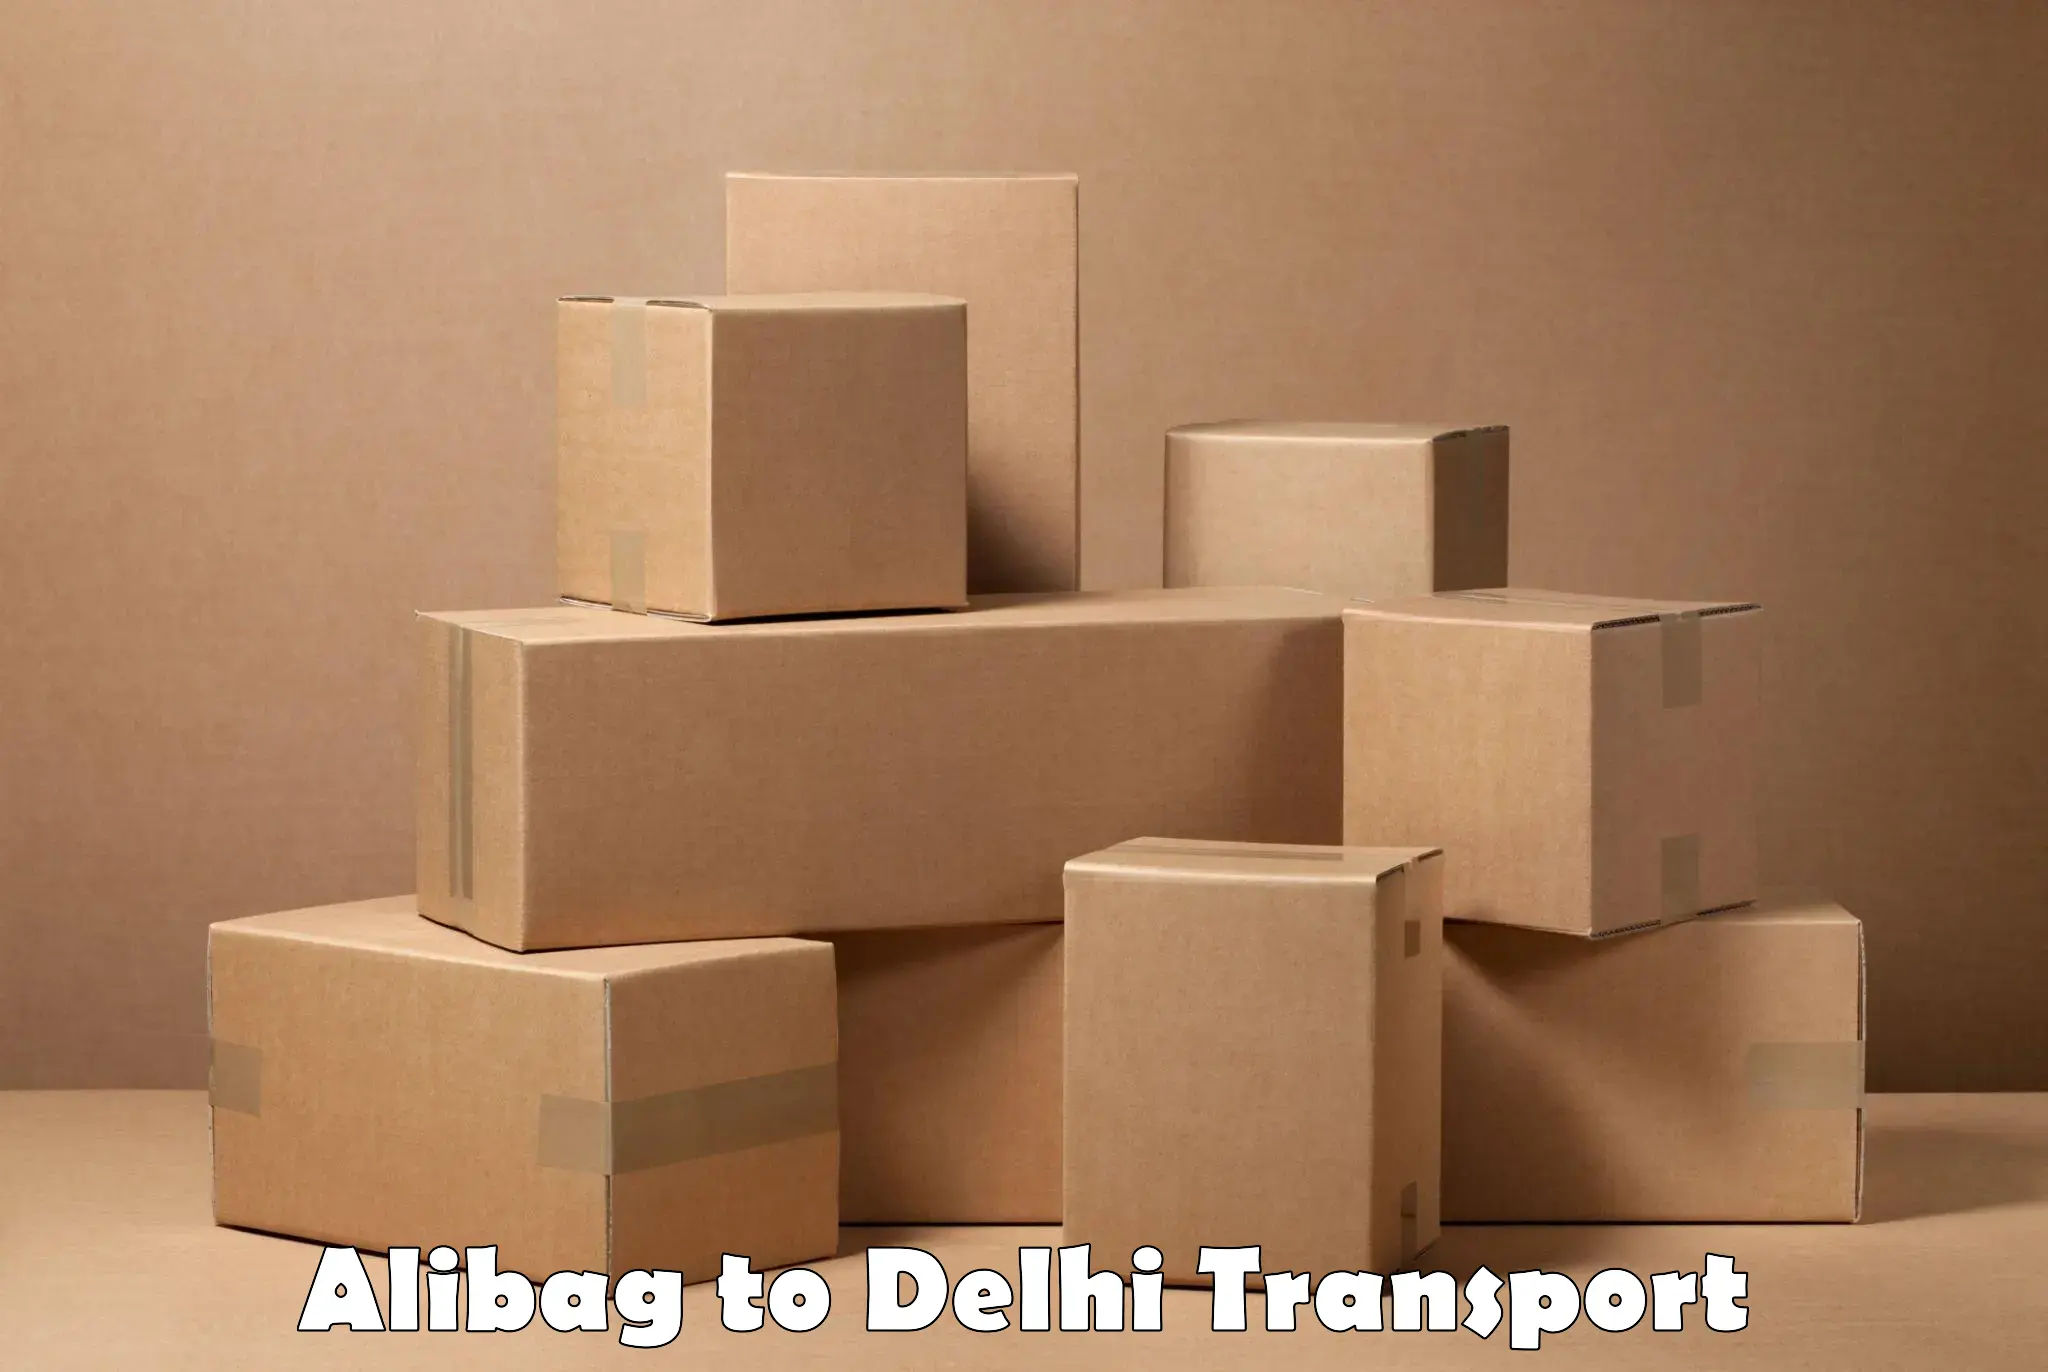 Road transport online services Alibag to NCR